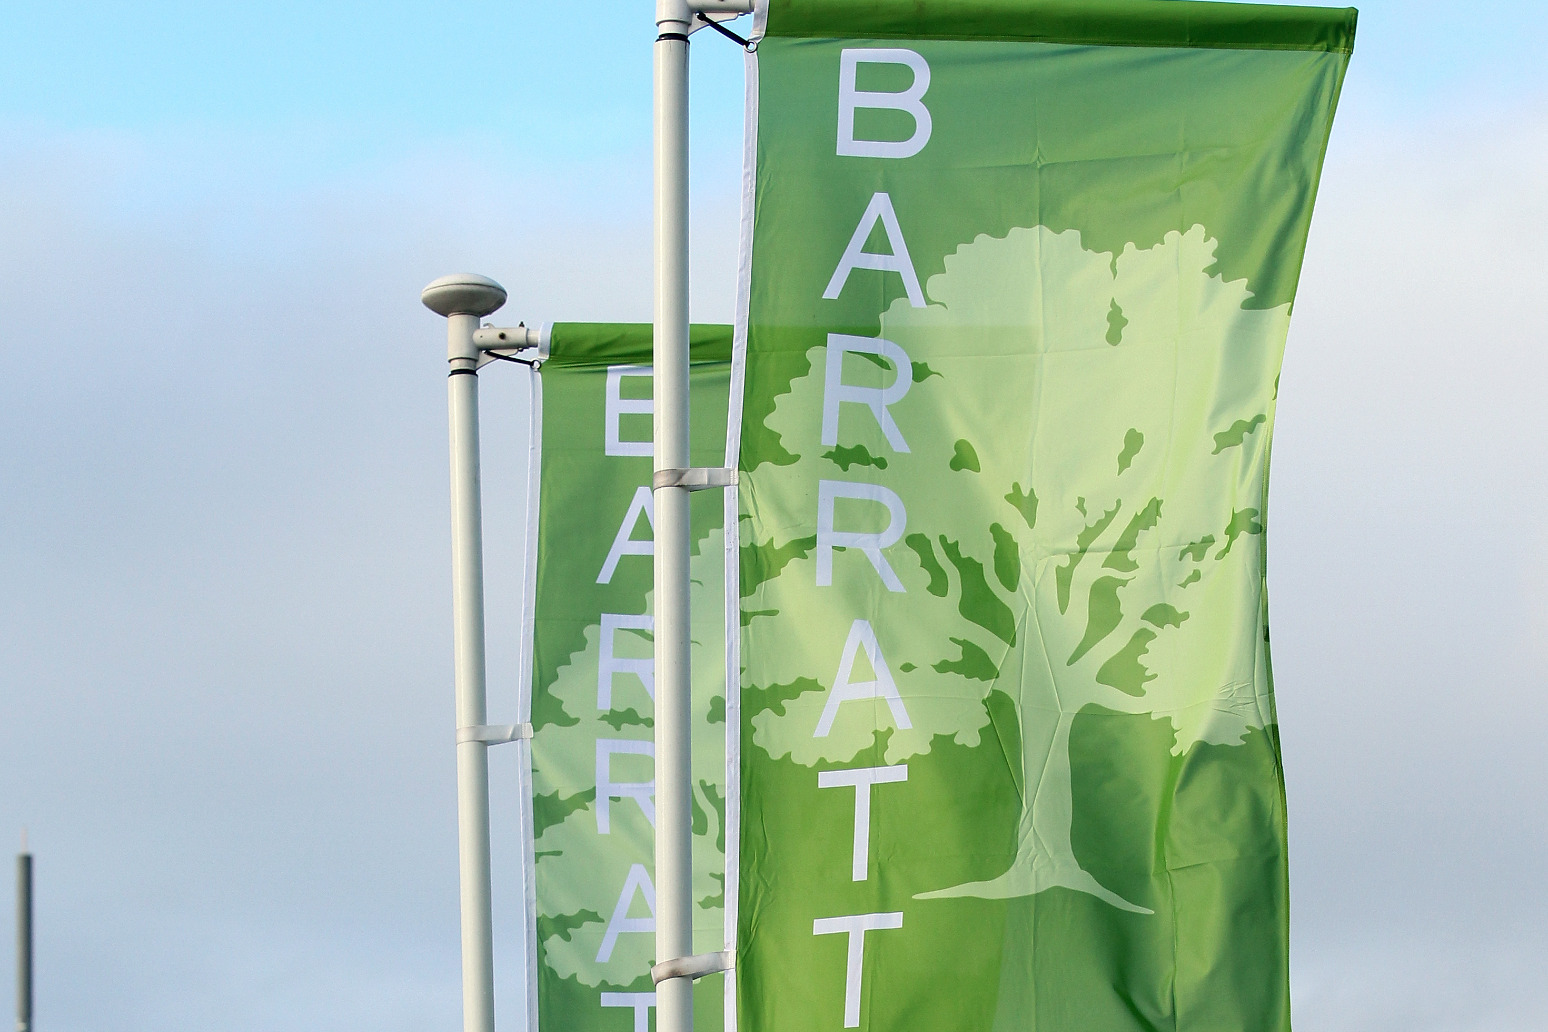 Barratt warns of ‘marked slowdown’ in housing market 